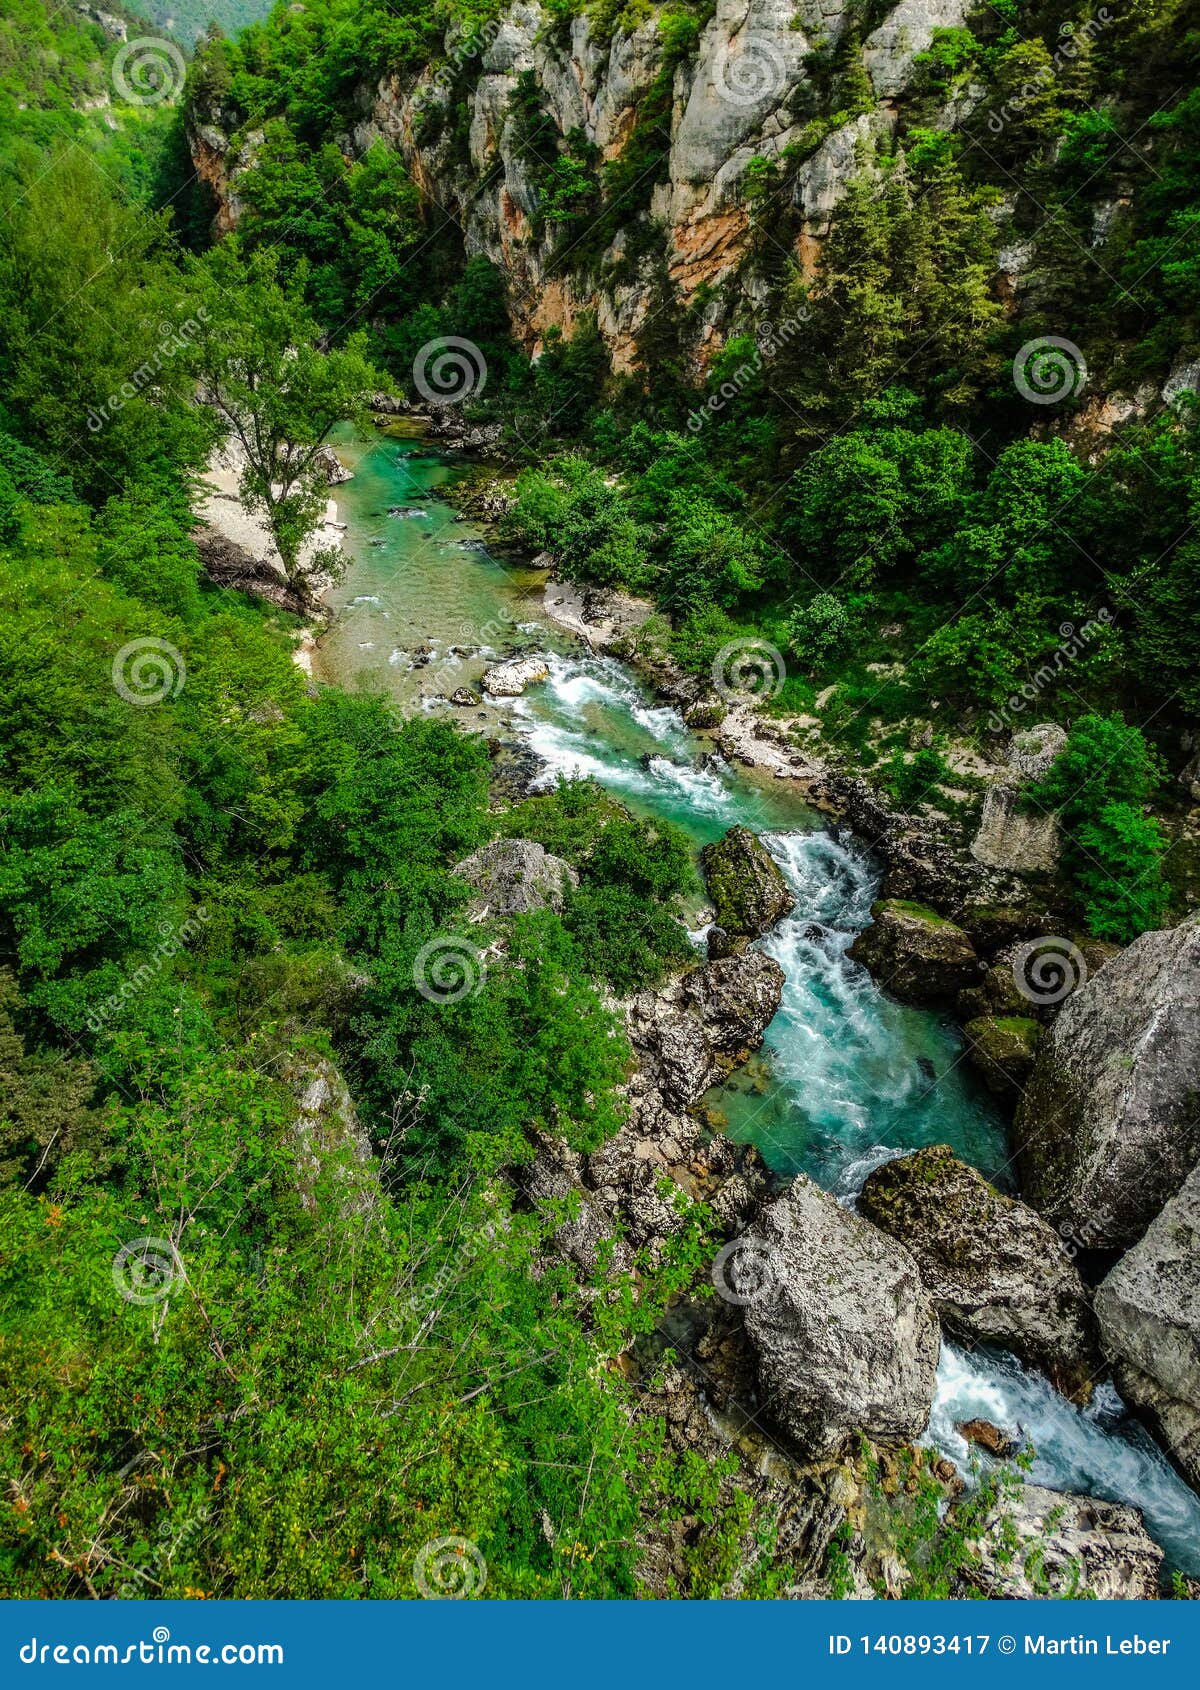 Gorges Du Verdon River, France Stock Image - Image of formation, color: 140893417